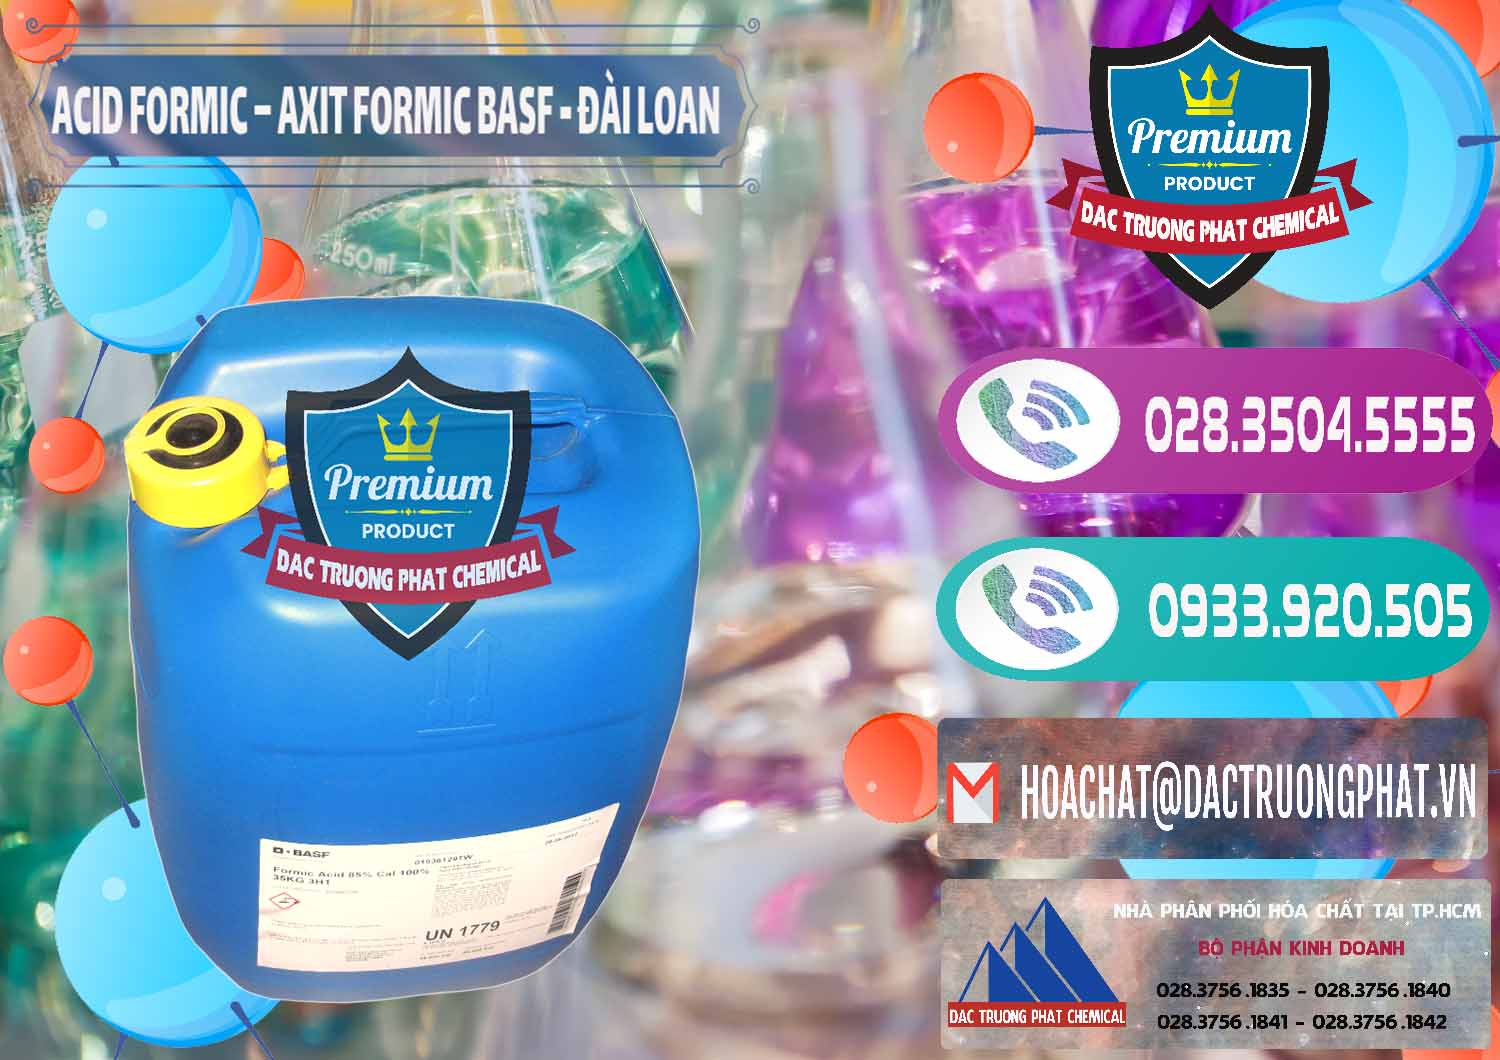 Nơi chuyên bán _ cung cấp Acid Formic - Axit Formic 85% BASF Đài Loan Taiwan - 0027 - Công ty kinh doanh _ cung cấp hóa chất tại TP.HCM - hoachatxulynuoc.com